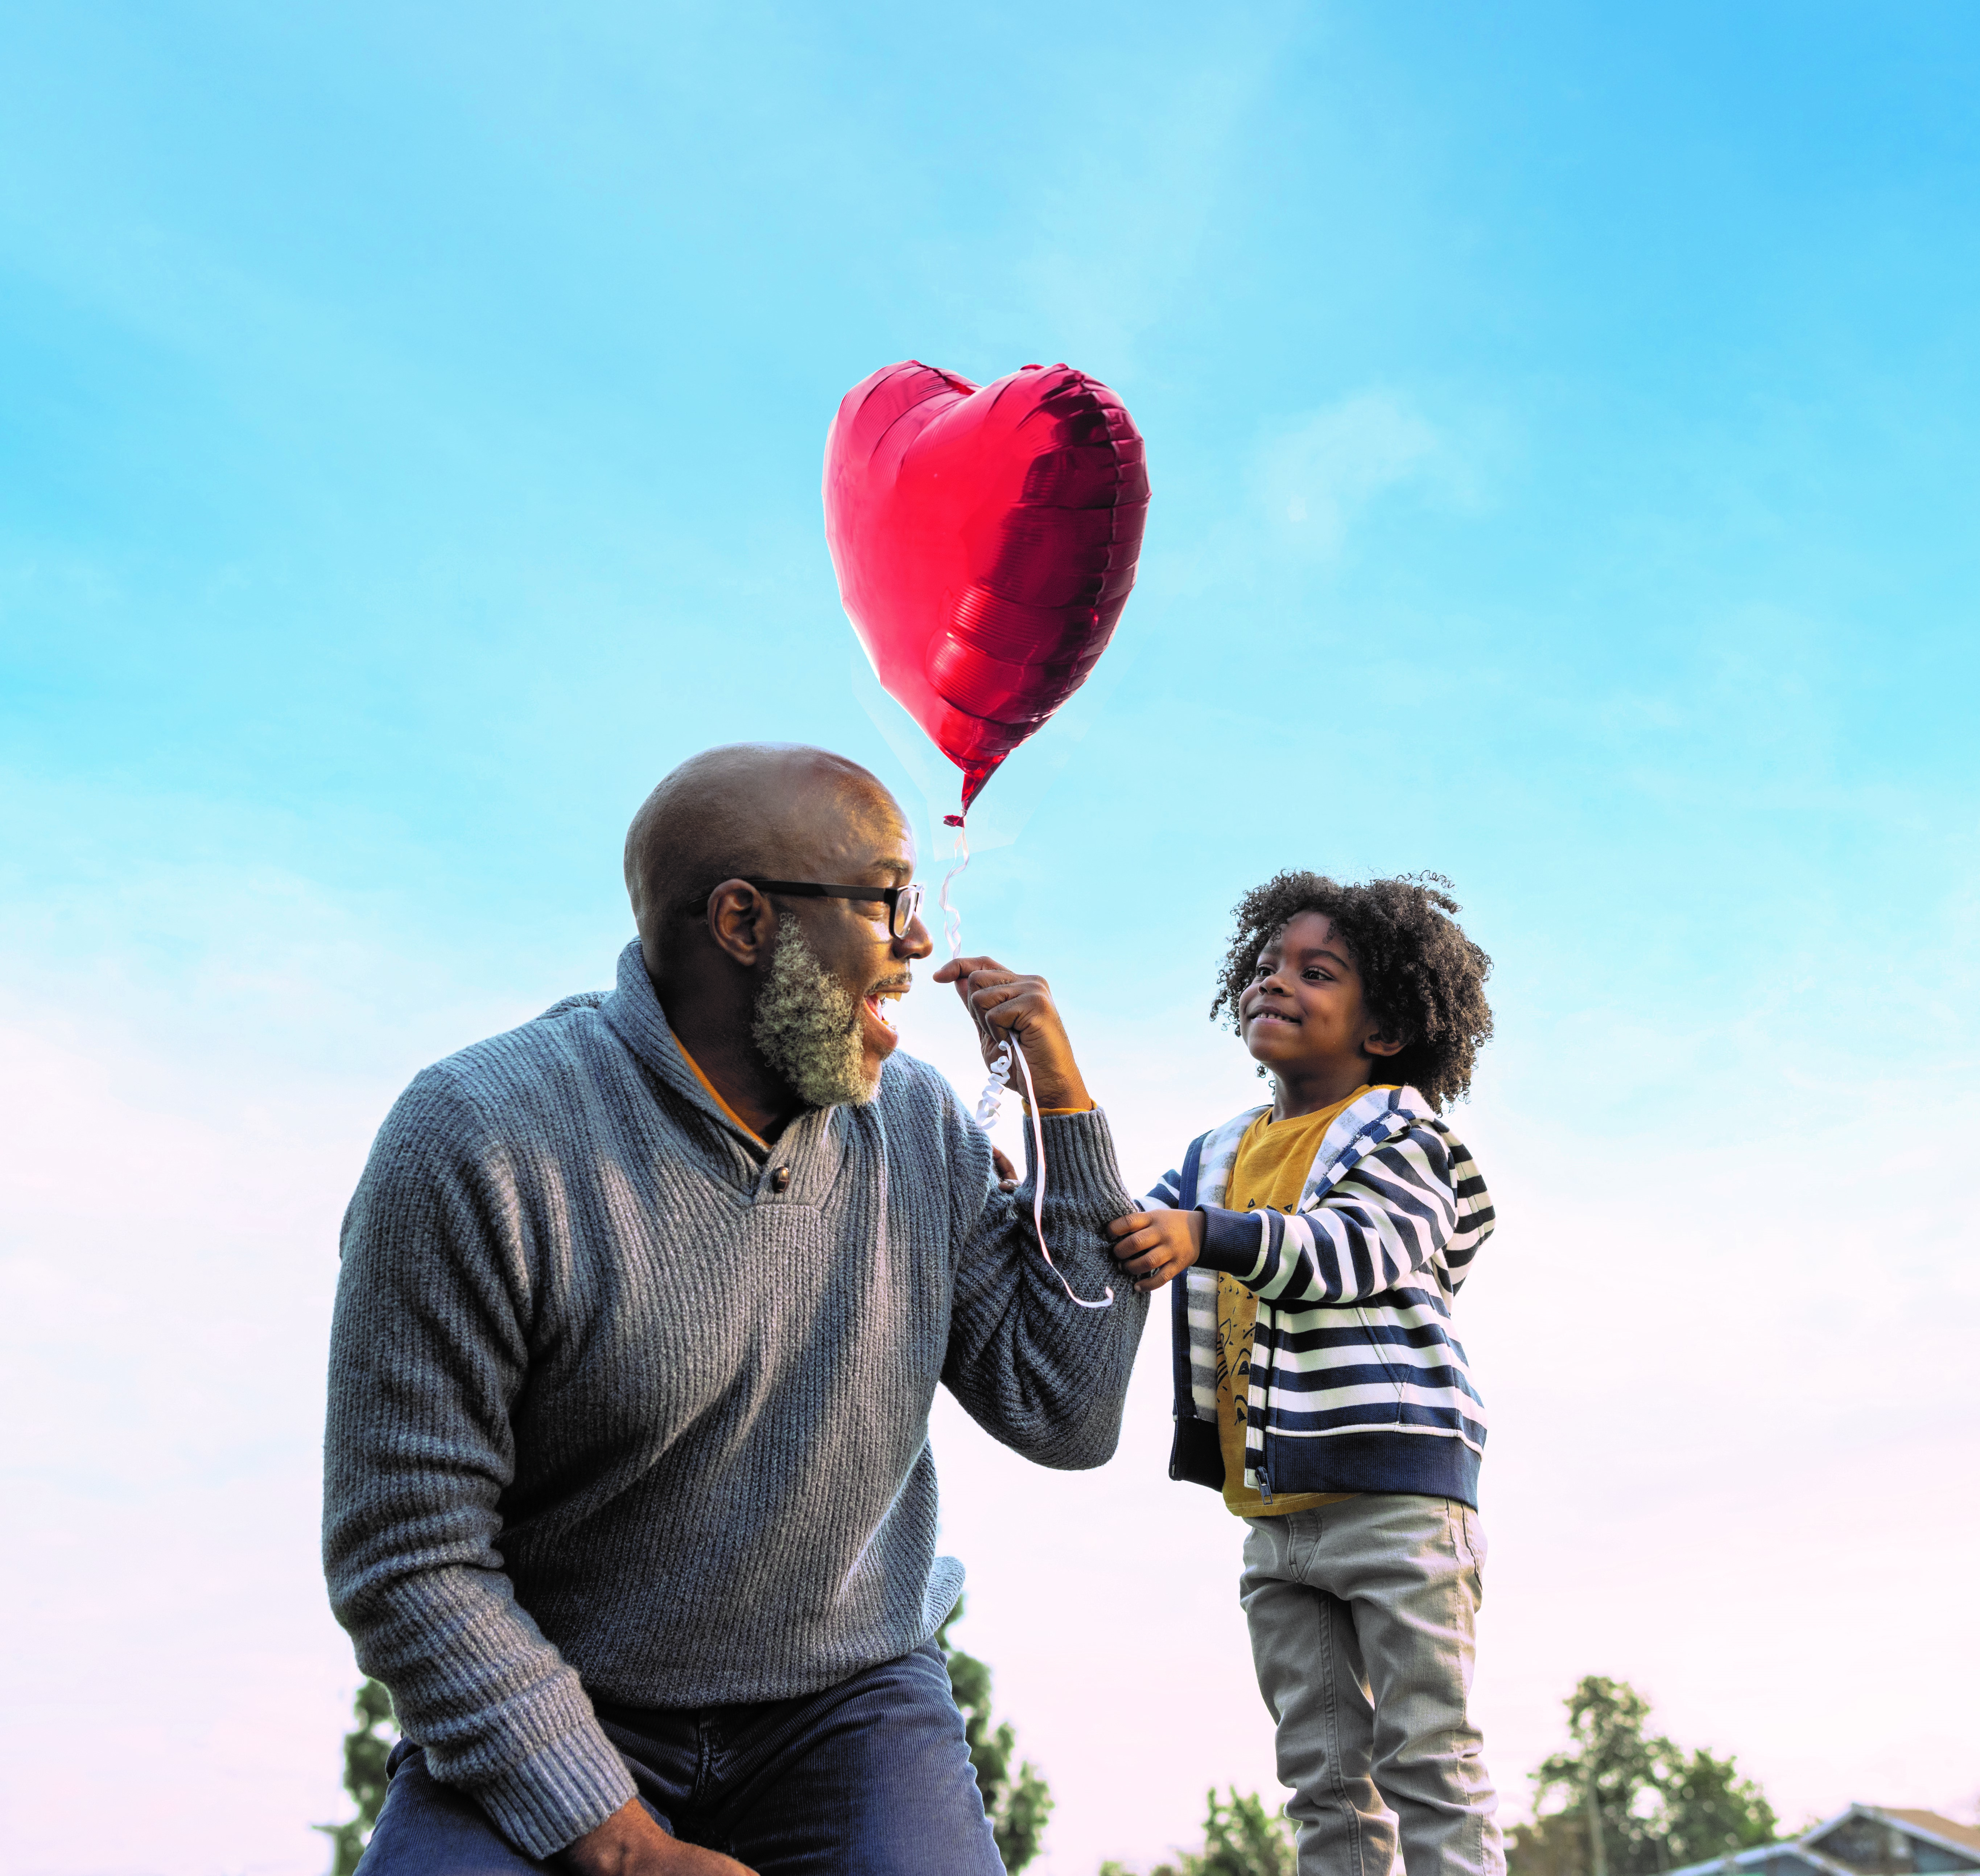 Grandpa and grandchild with balloon.